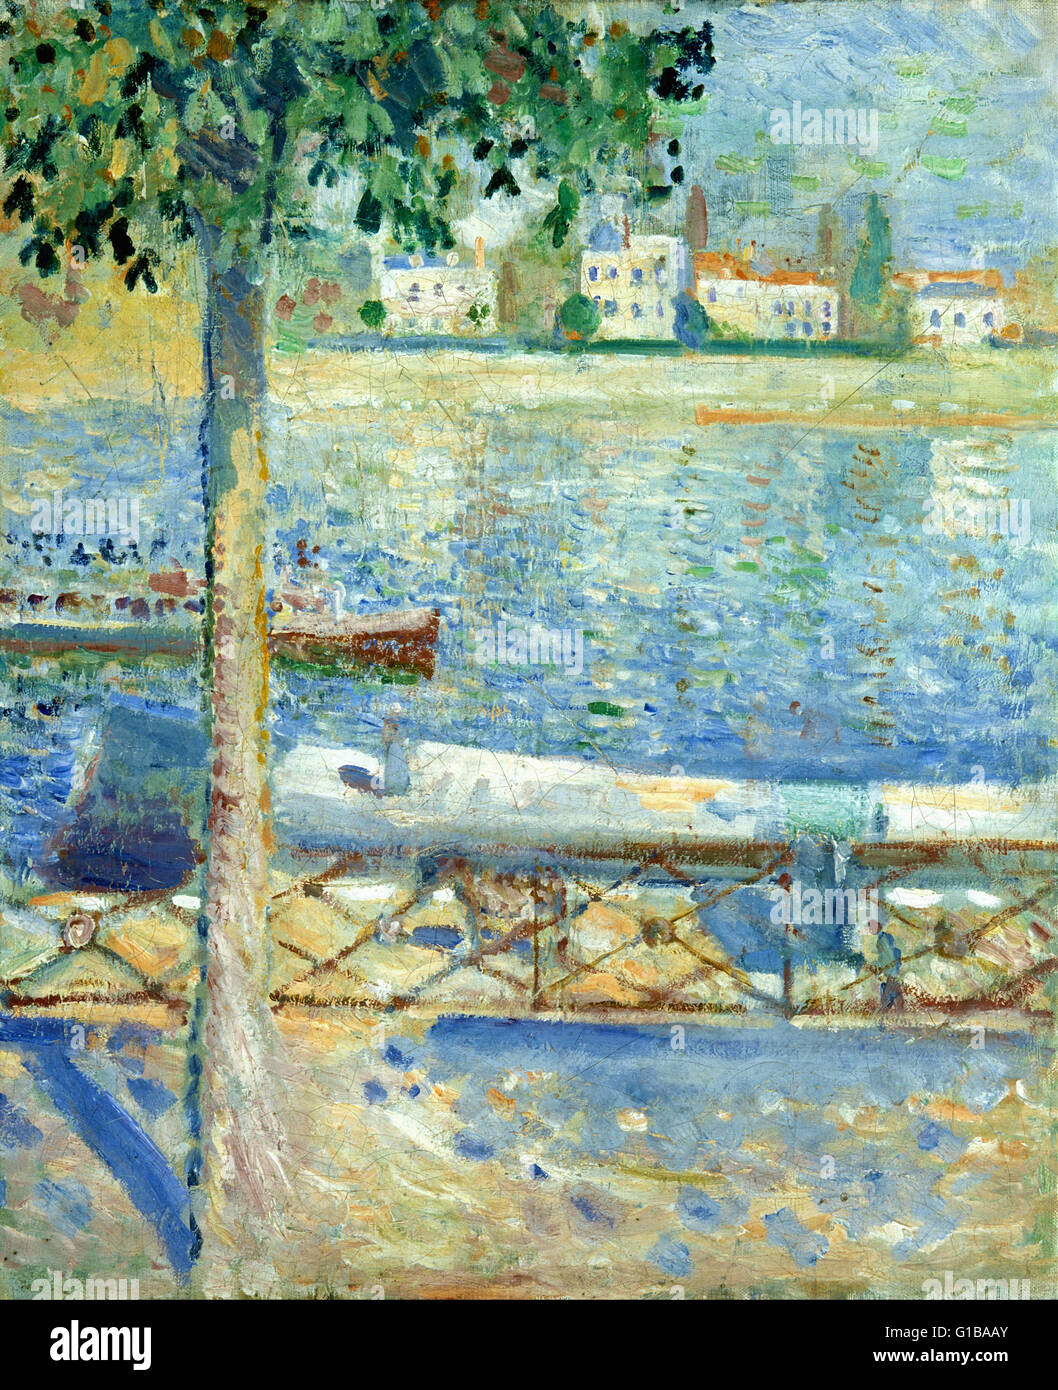 Edvard Munch - La Seine à Saint-Cloud - Le Musée Munch, Oslo Banque D'Images